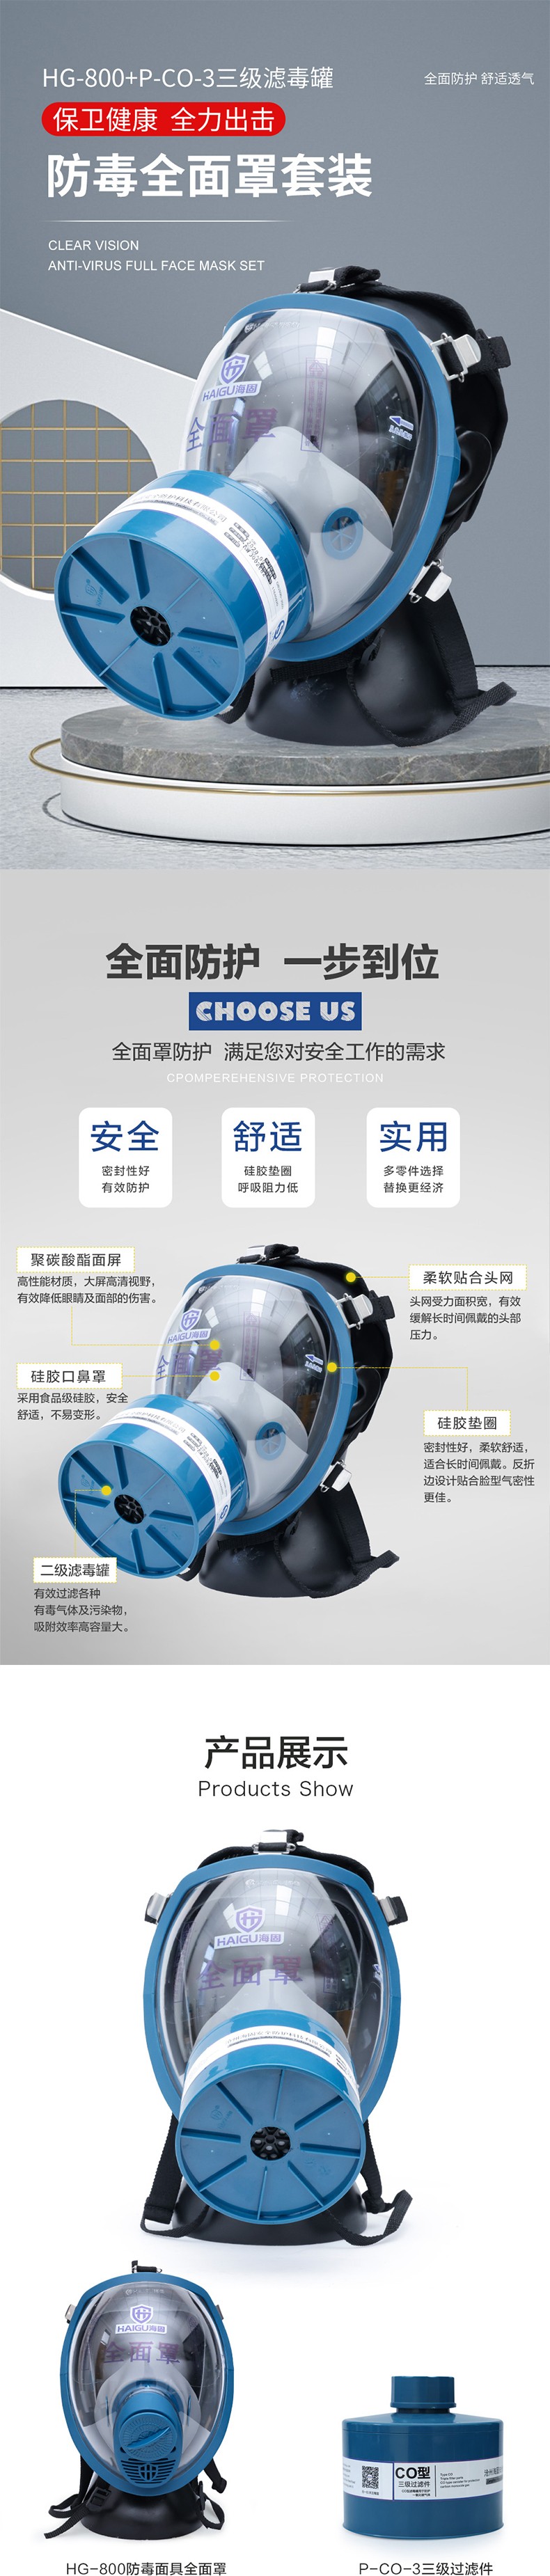 海固HG-800 P-CO-3一氧化碳全面罩防毒面具图片